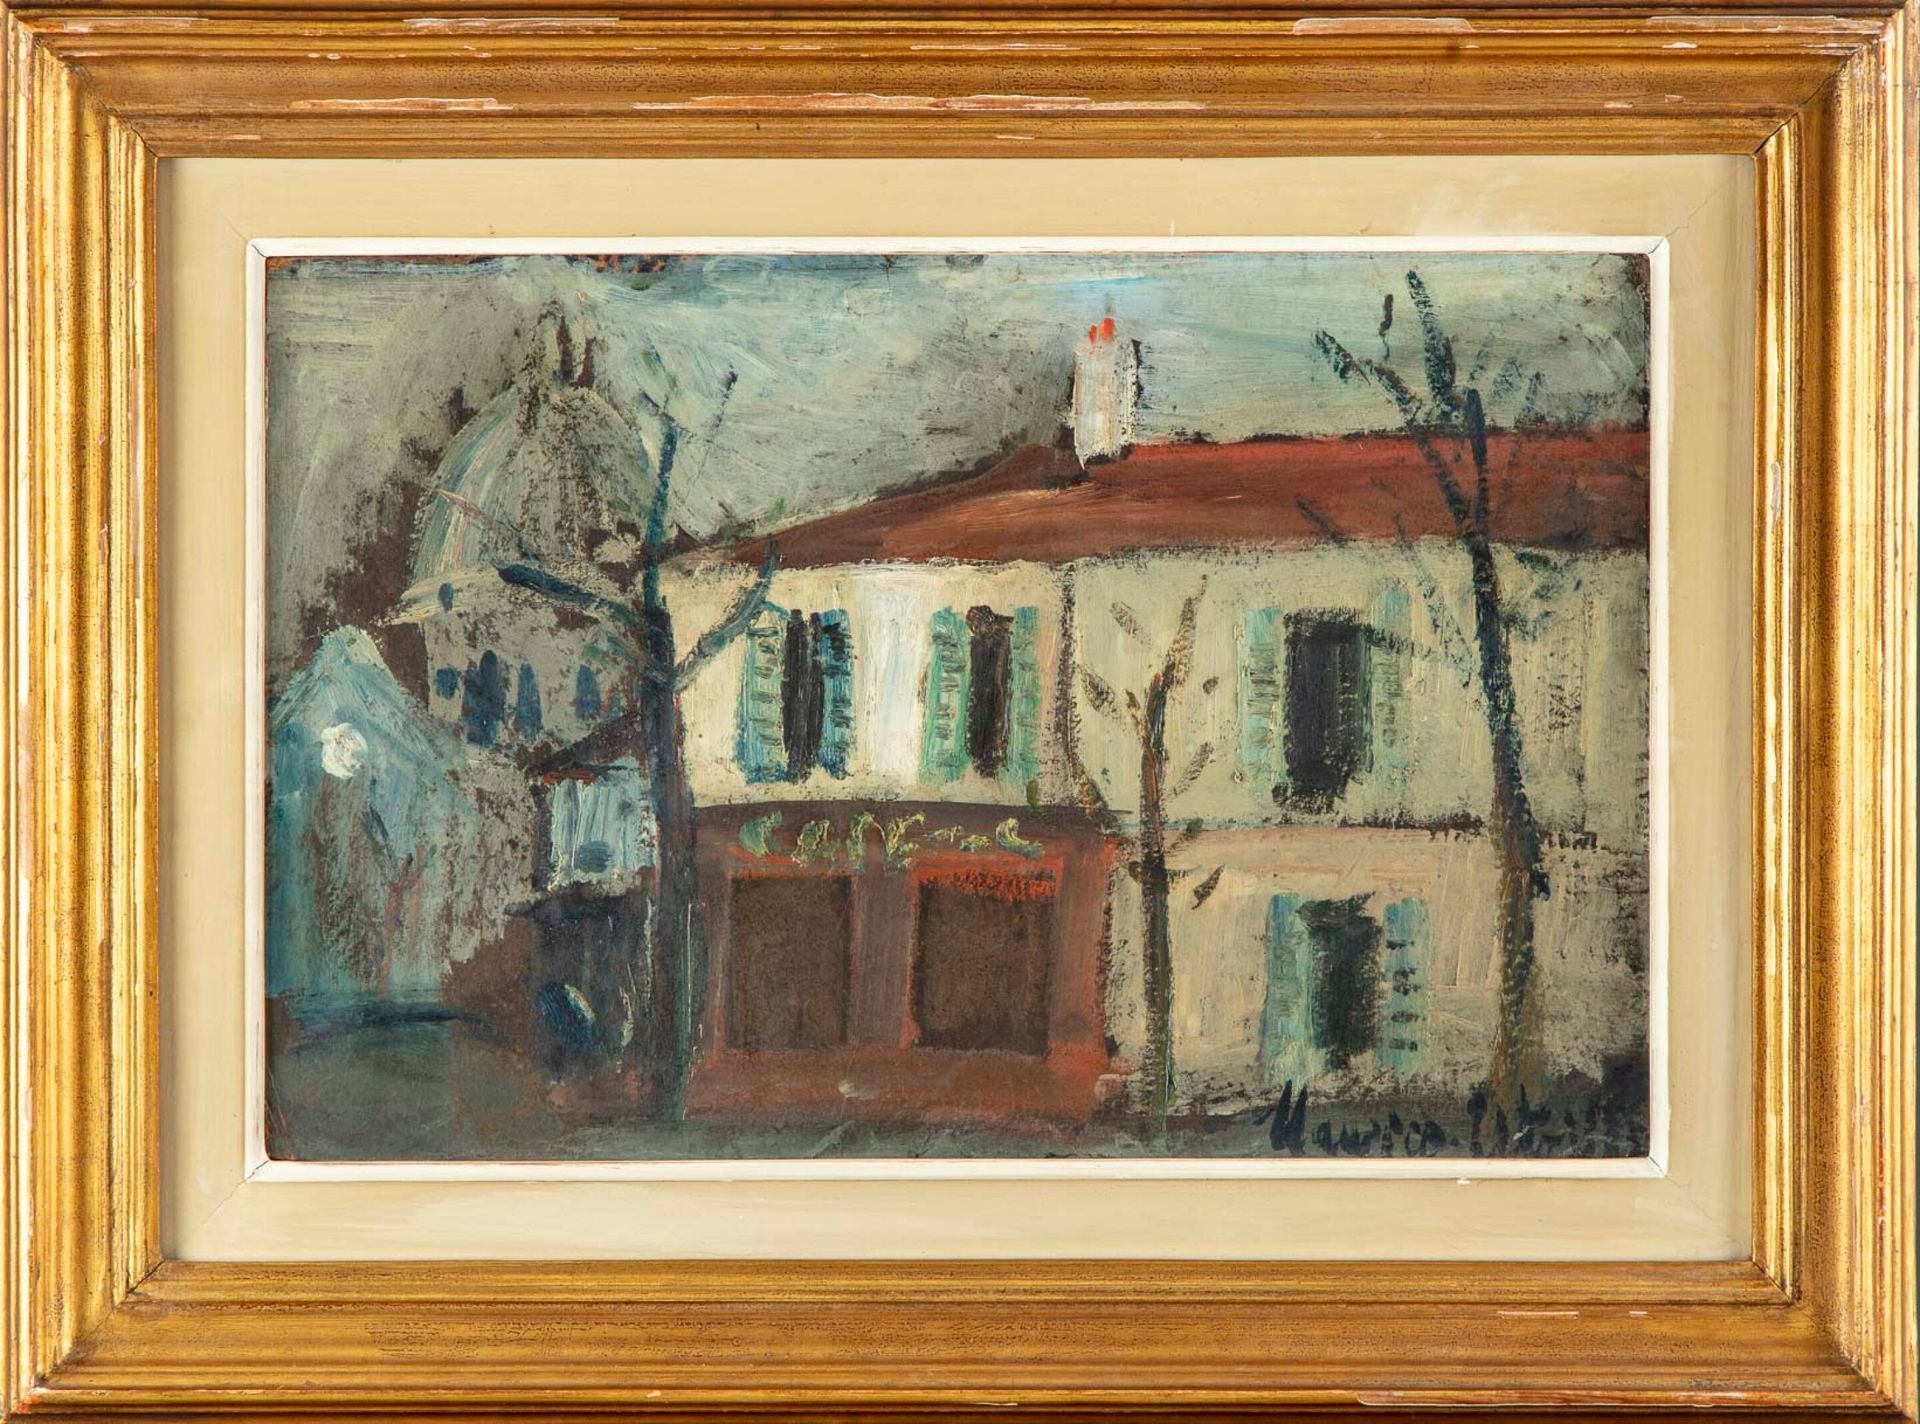 Maurice Utrillo 
莫里斯-乌蒂略 (1883 - 1955)




斯皮尔曼餐厅、特尔特广场和圣心教堂 




纸板上的油彩




右下方&hellip;